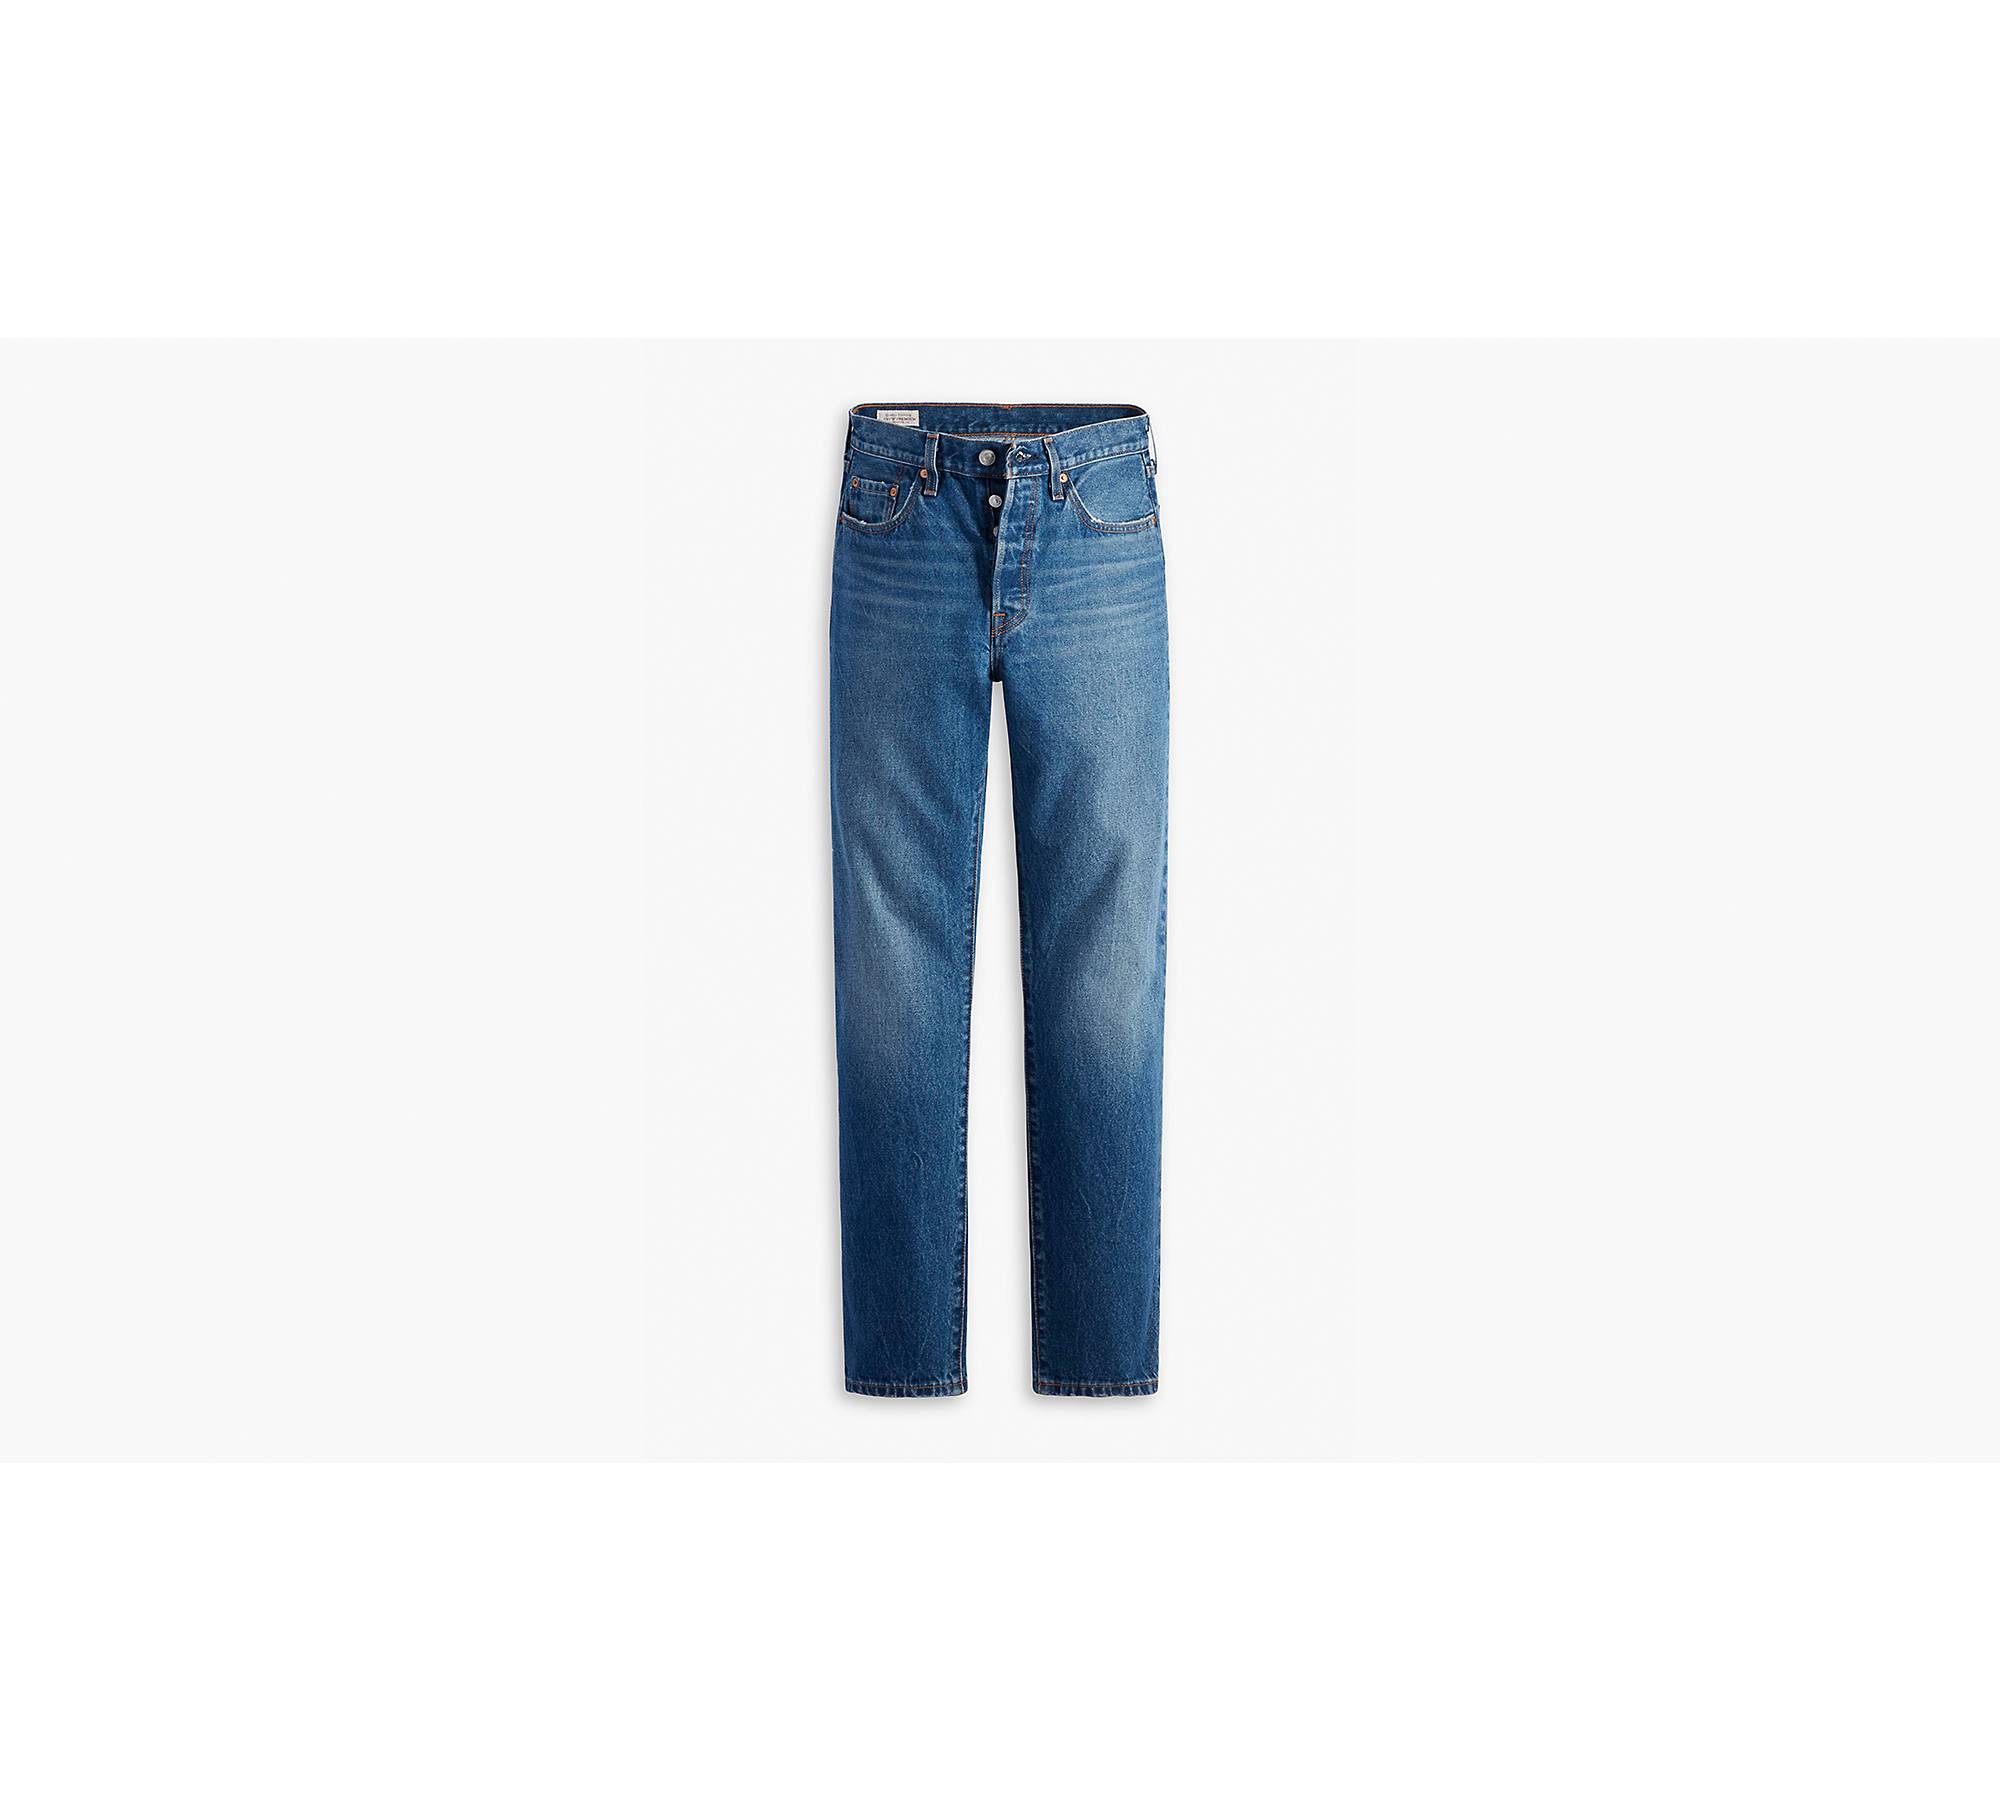 Levi's 501 x NewJeans, Women T-Shirt , Jeans & More